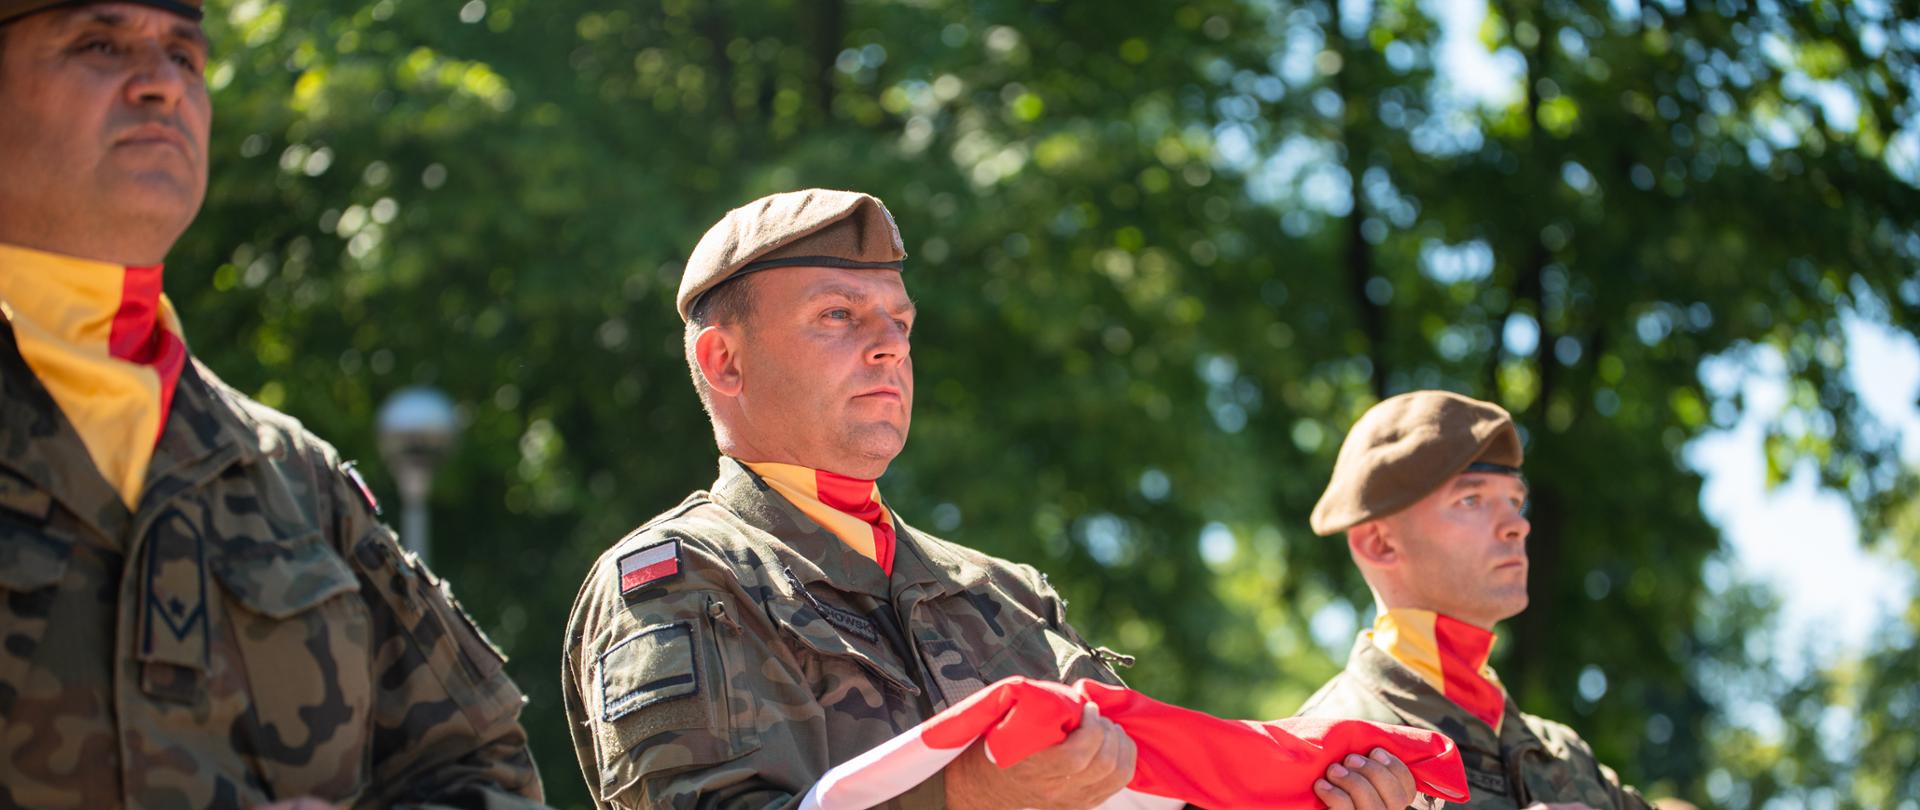 trzech żołnierzy WOT maszeruje w rzędzie, żołnierz w środku trzyma złożoną flagę Polski